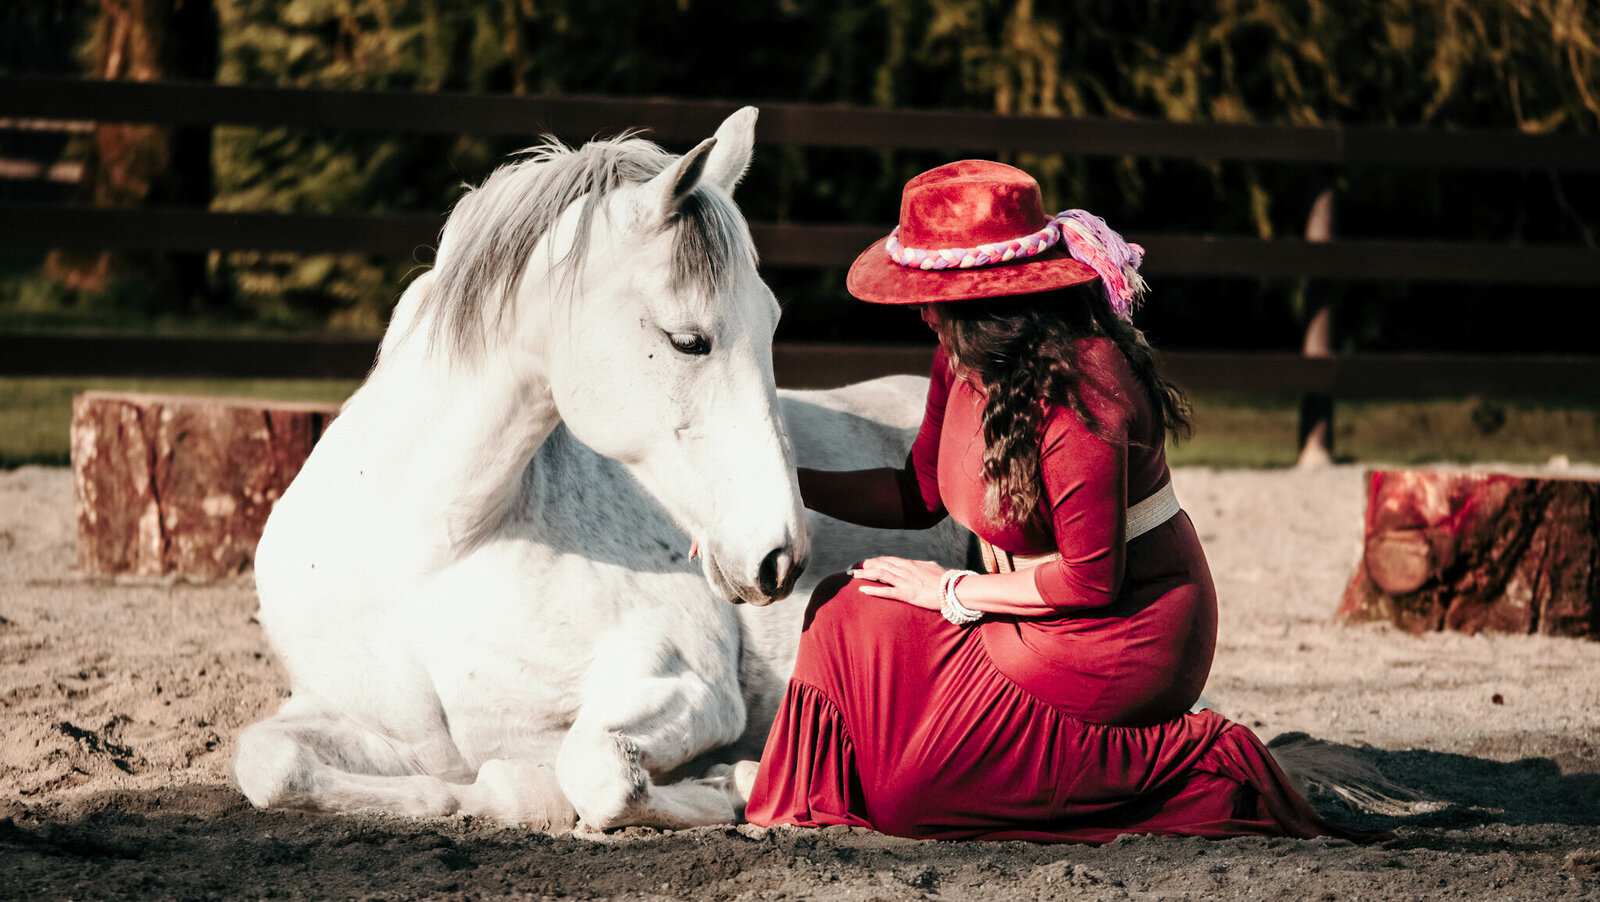 A Woman enjoying her horse